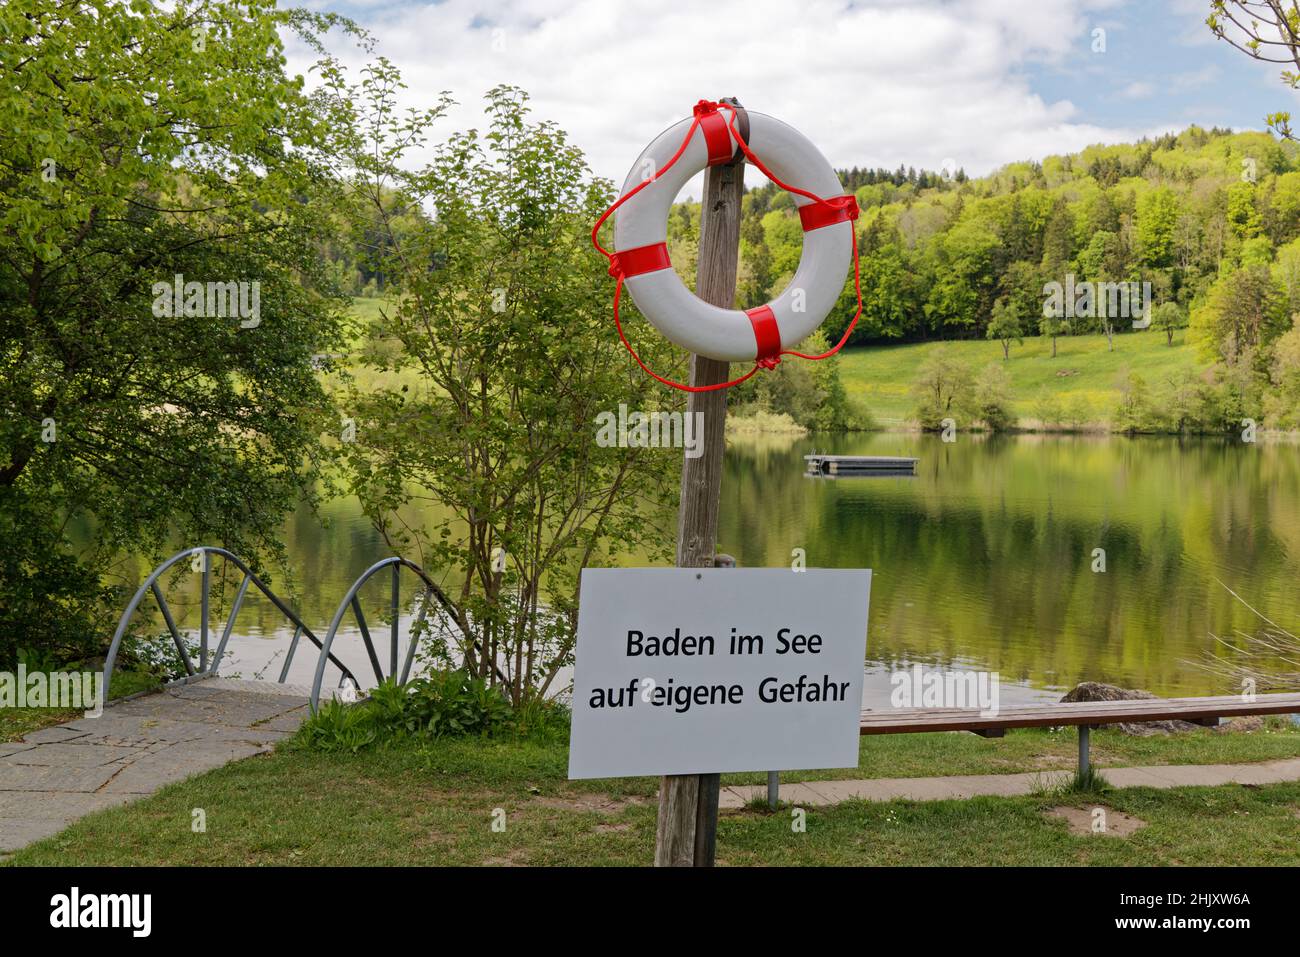 etablissement de baignade avec lac, en premier plan anneau de sauvetage blanc-rouge avec signe d'avertissement texte allemand traduction: nager dans le lac à vos risques et périls Banque D'Images